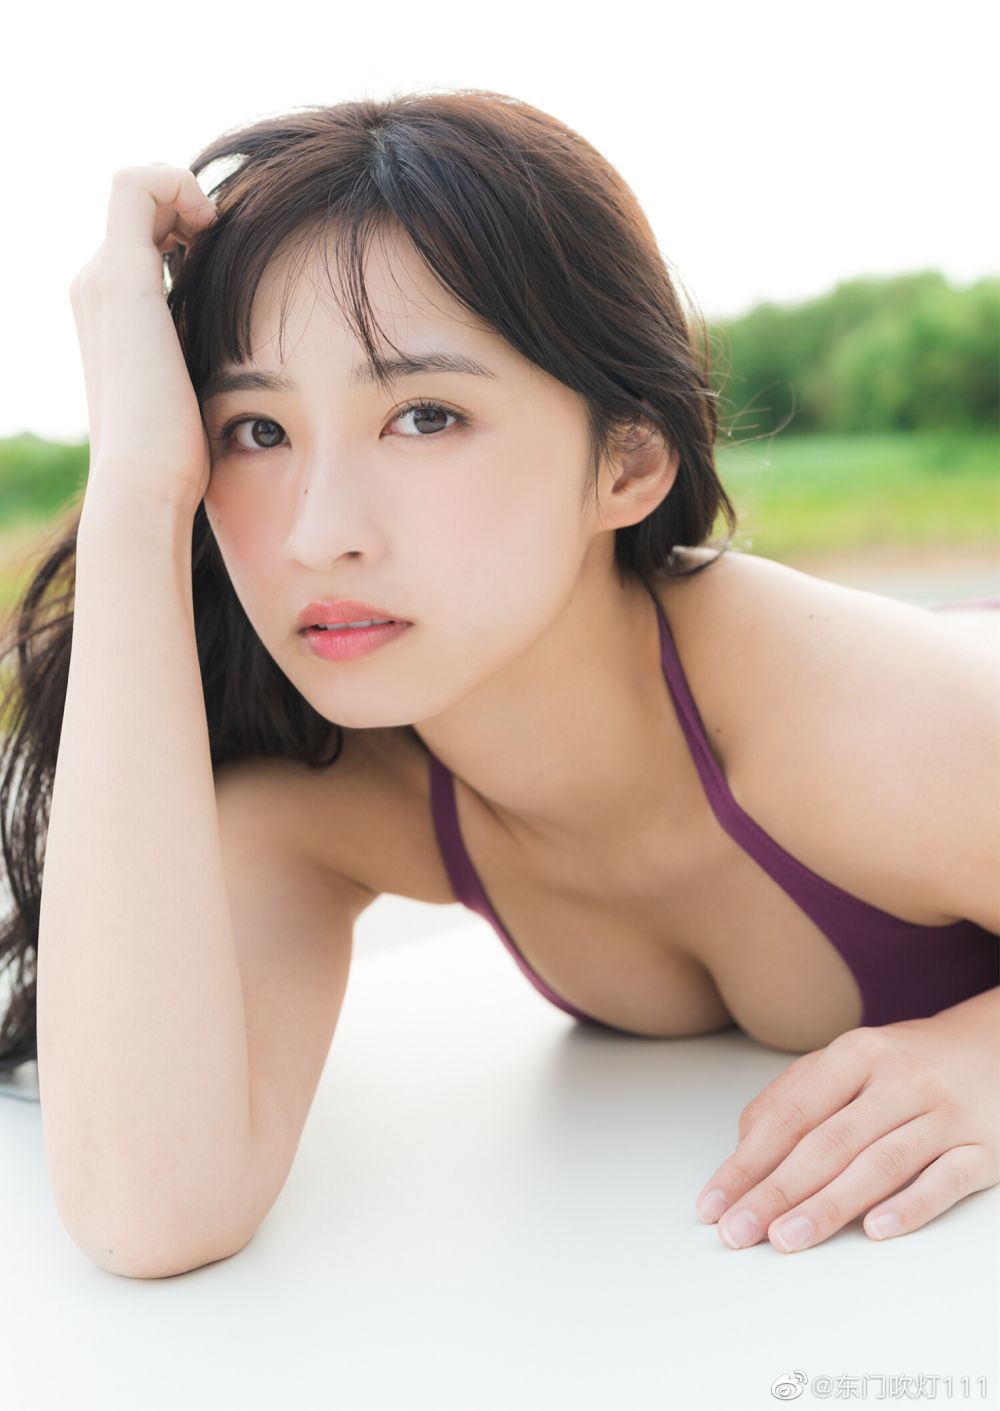 松本日向 Sexy and Hottest Photos , Latest Pics